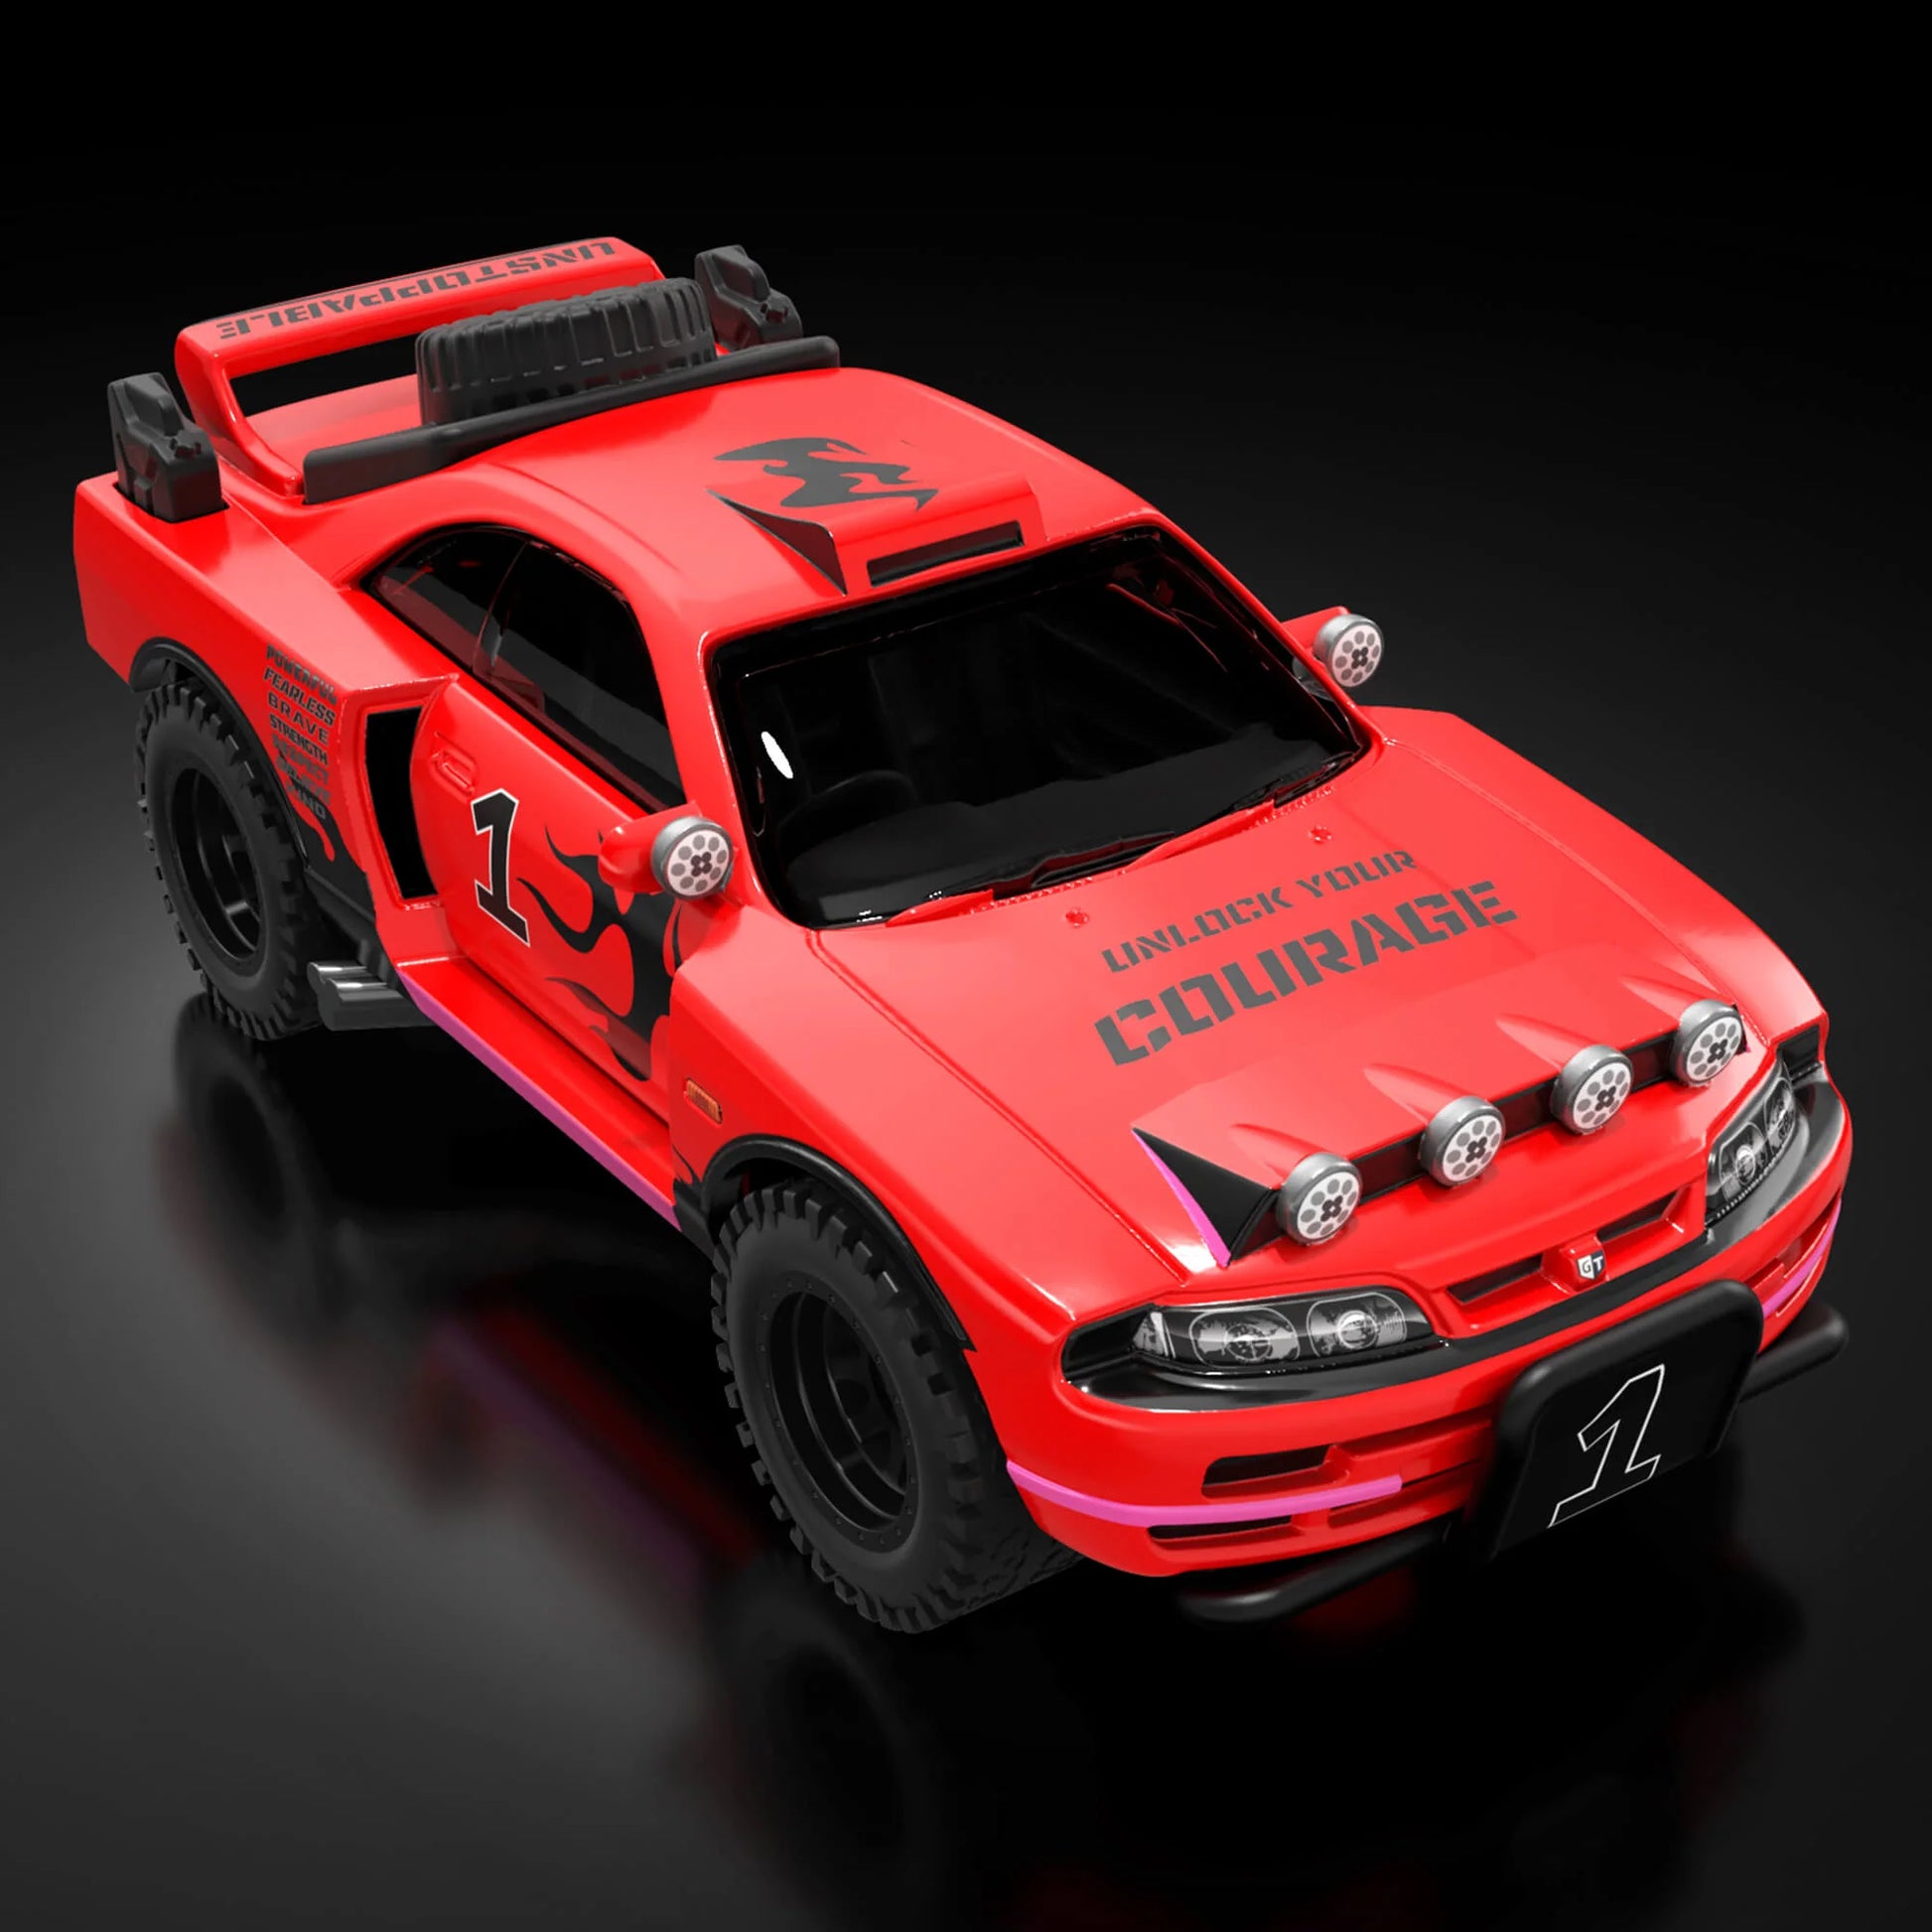 GTR R32 BODYKIT For Hotwheels 1-64 3D model 3D printable